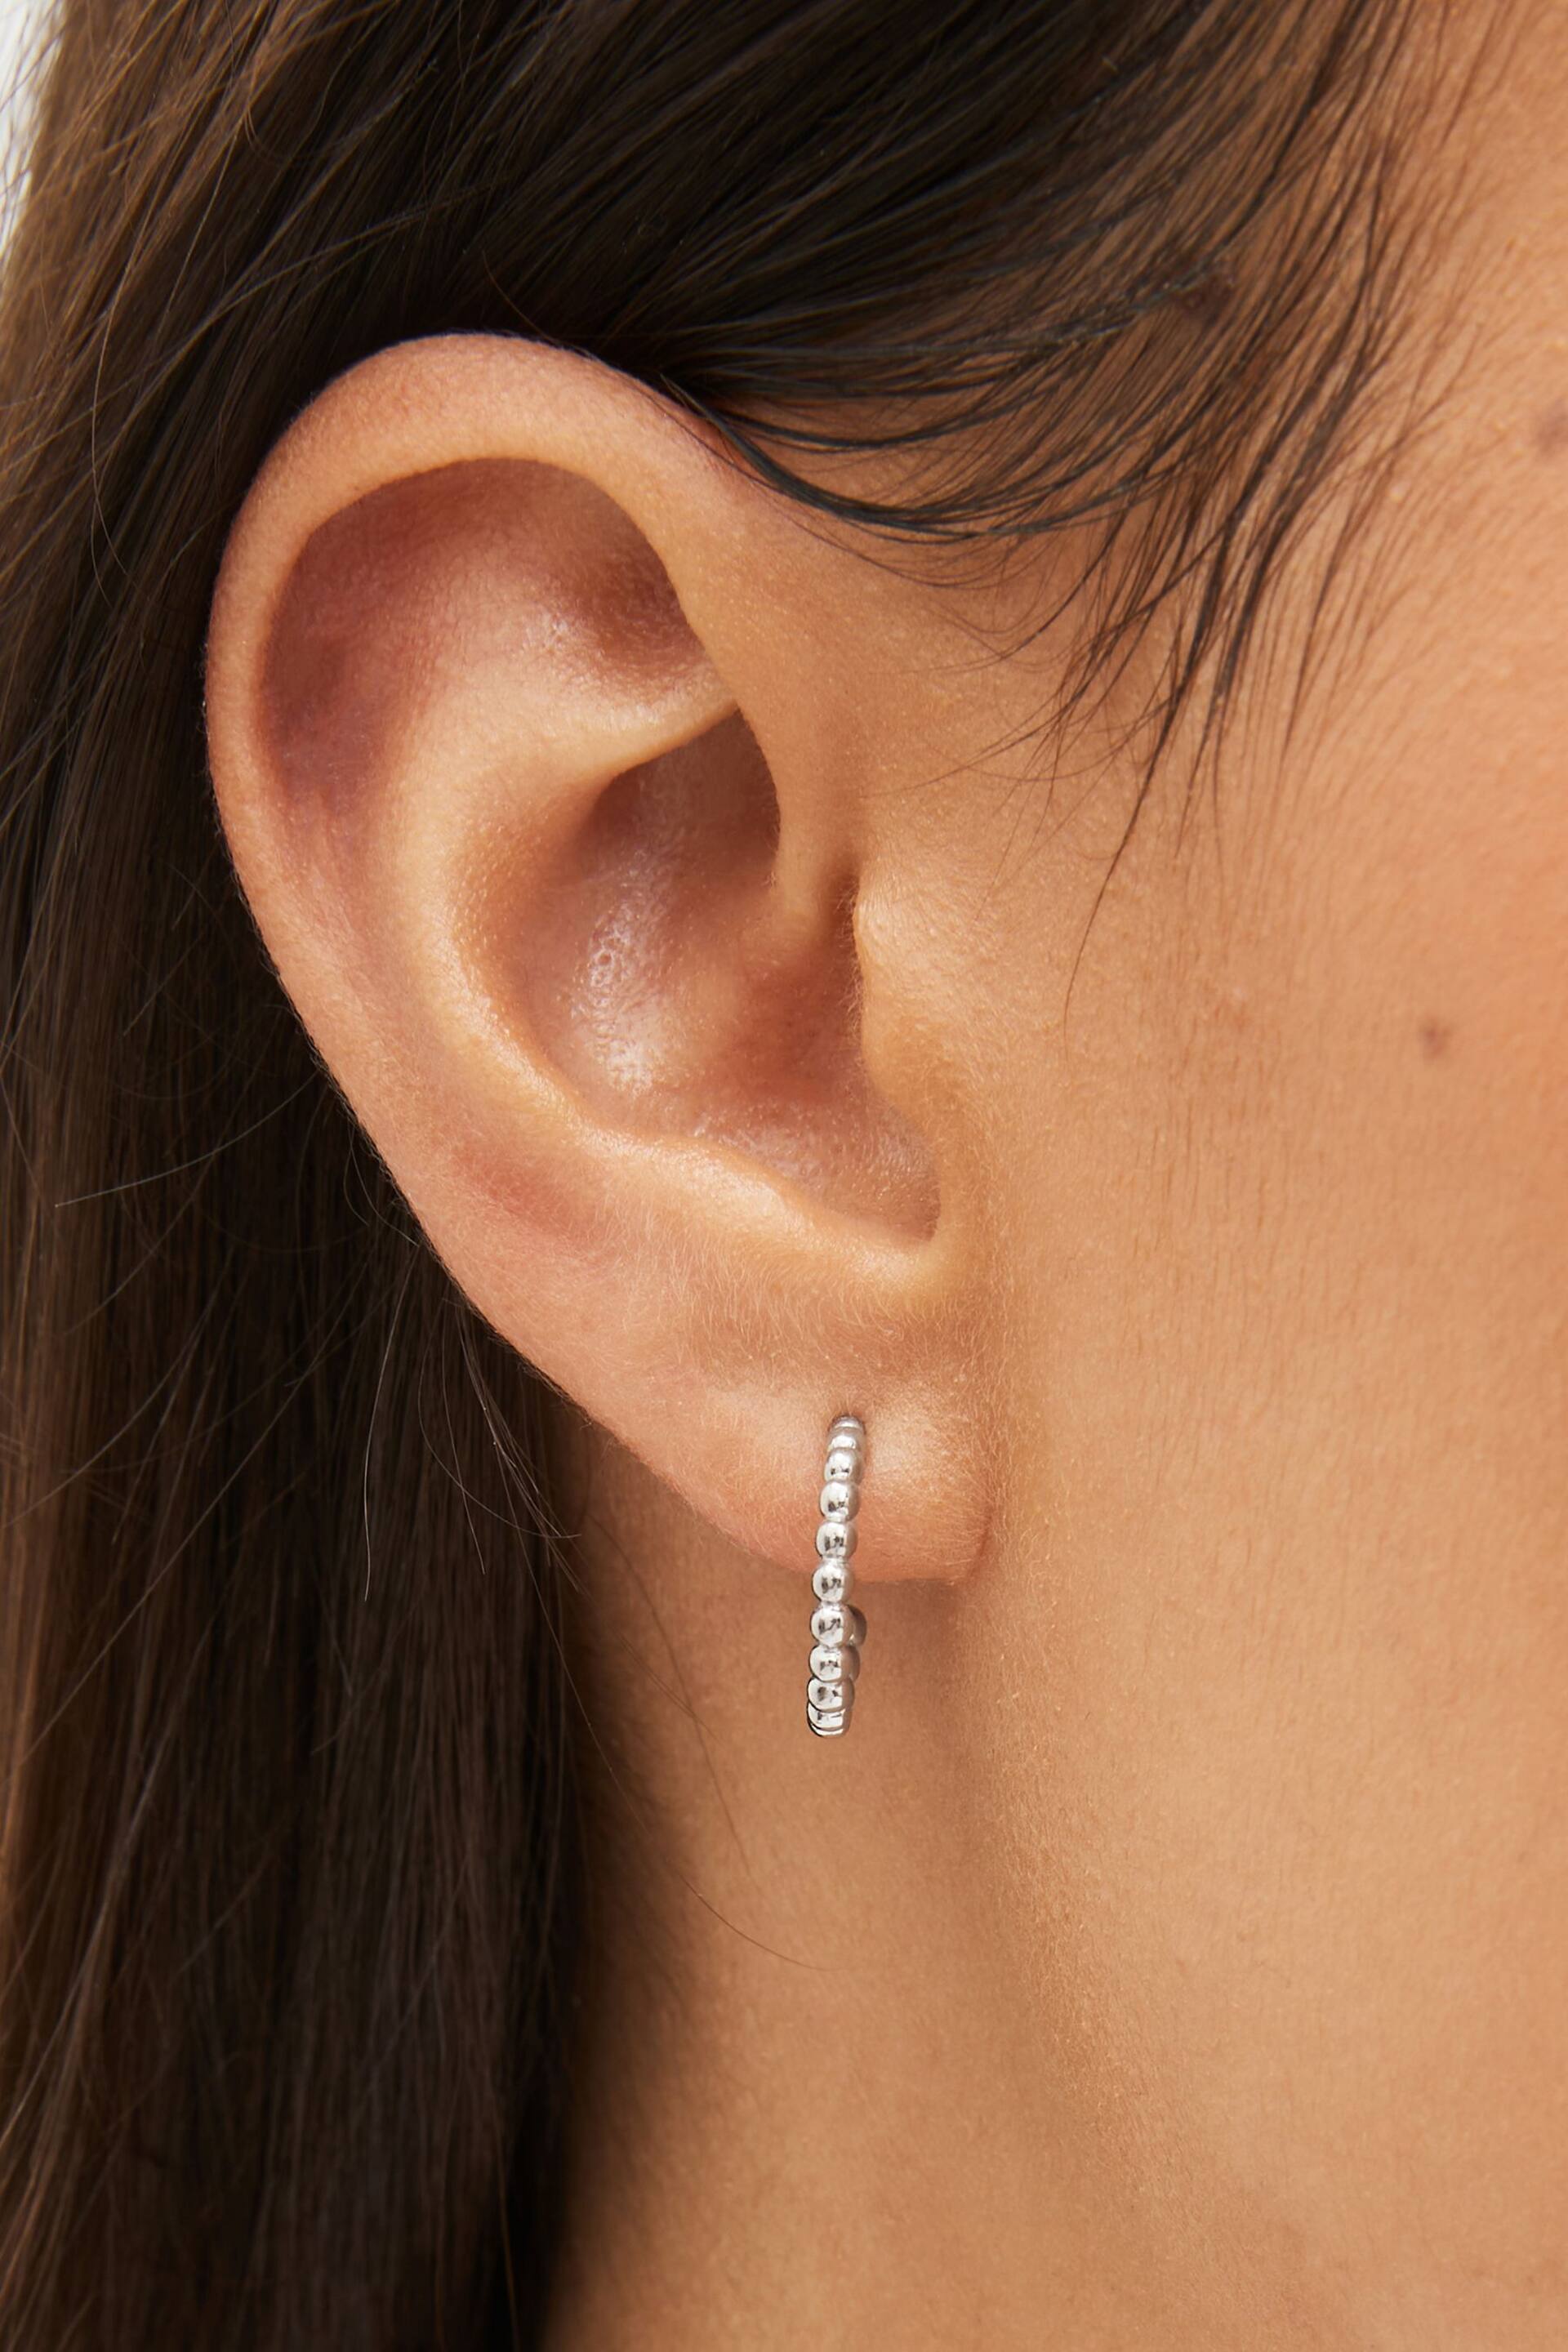 Sterling Silver Ball Hoop Earrings - Image 1 of 3